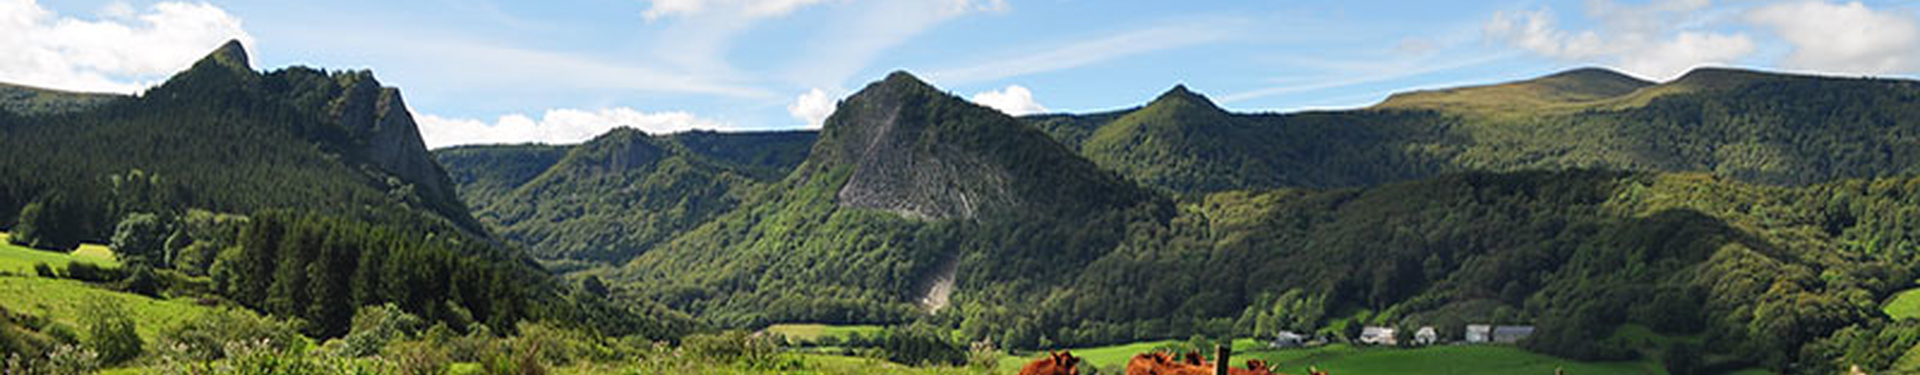 Randonnée 4 jours en liberté sur les volcans d'Auvergne | 3 nuits en hôtel